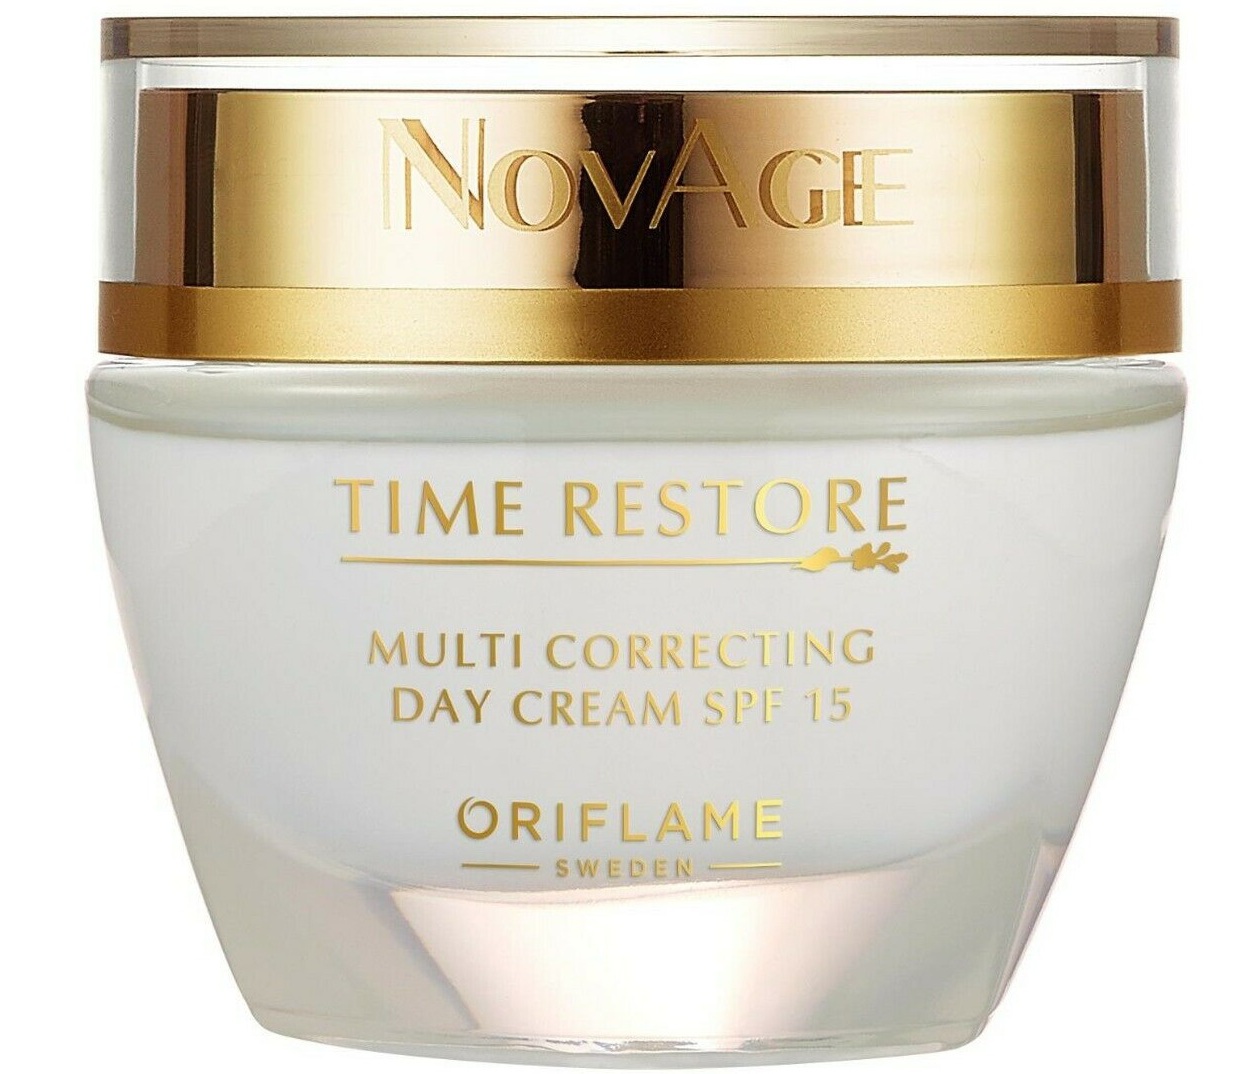 Oriflame Novage Time Restore Multi Correcting Day Cream SPF 15